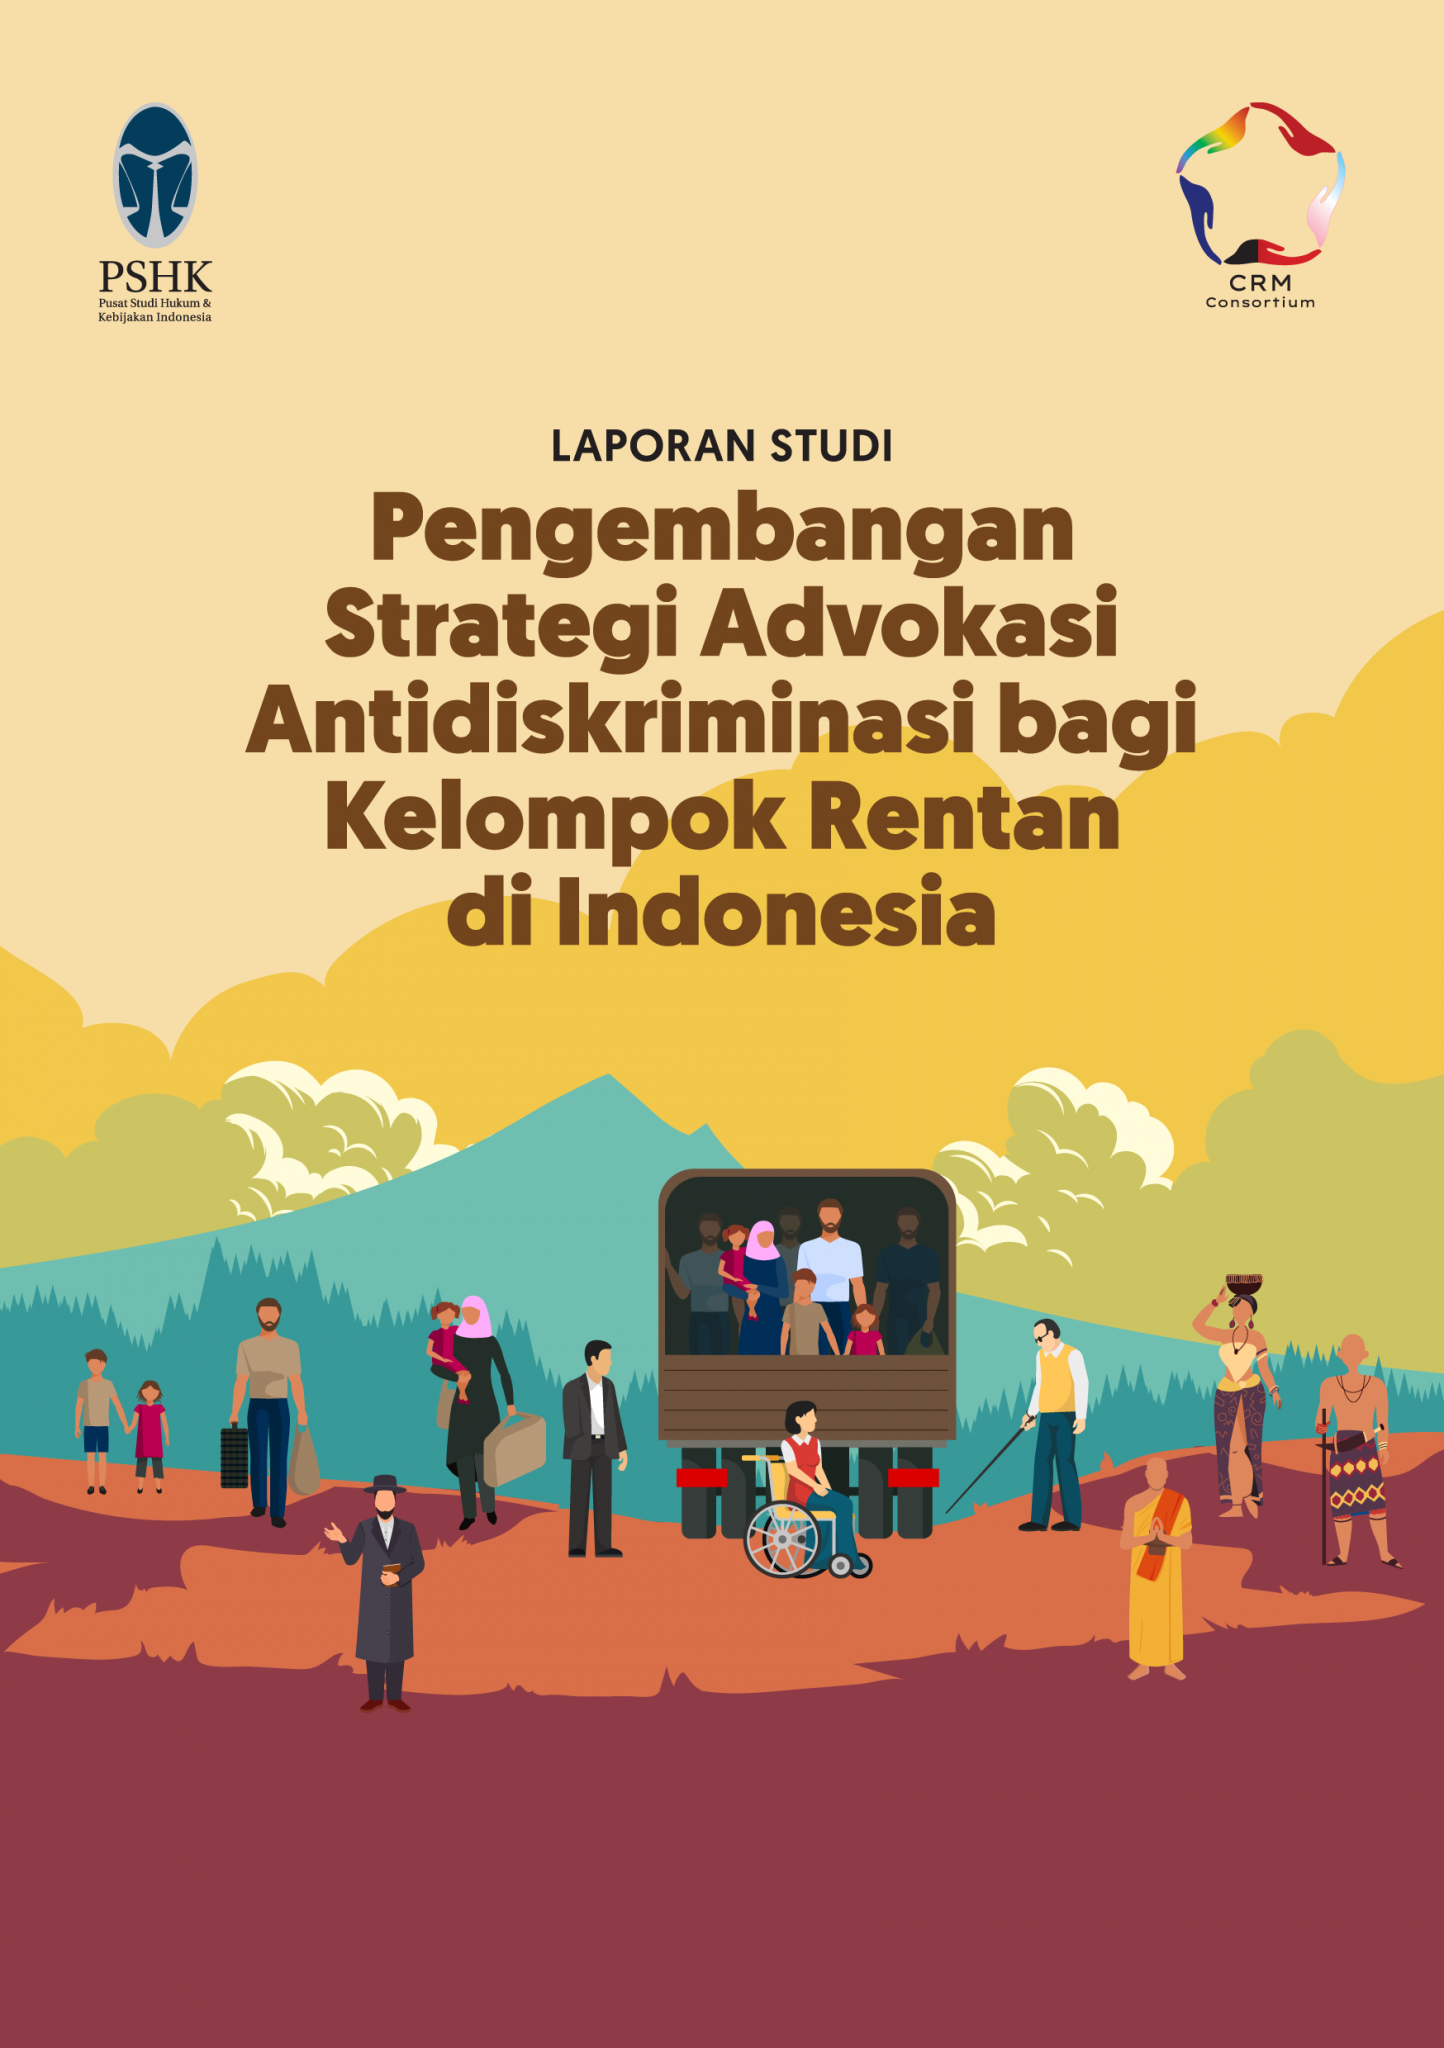 Laporan Studi Pengembangan Strategi Advokasi Antidiskriminasi bagi Kelompok Rentan di Indonesia